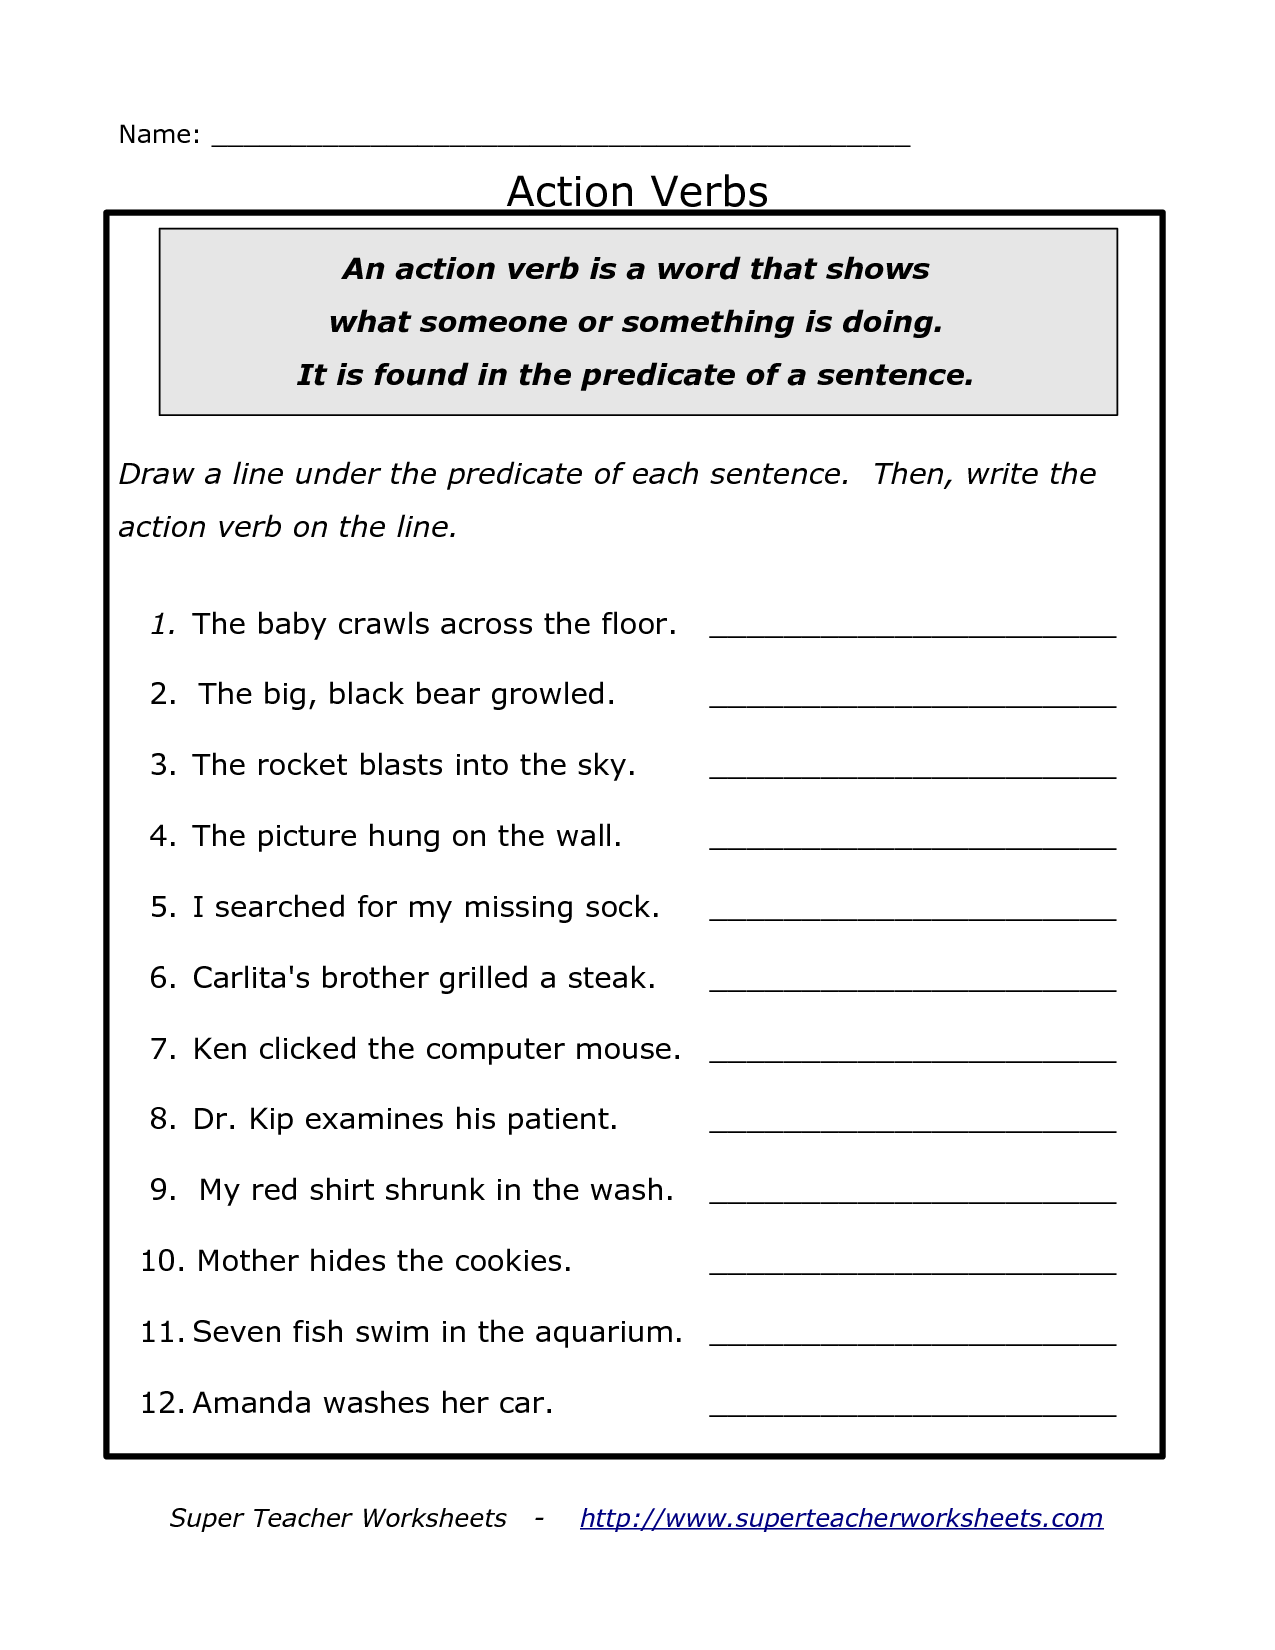 action-verbs-verb-worksheet